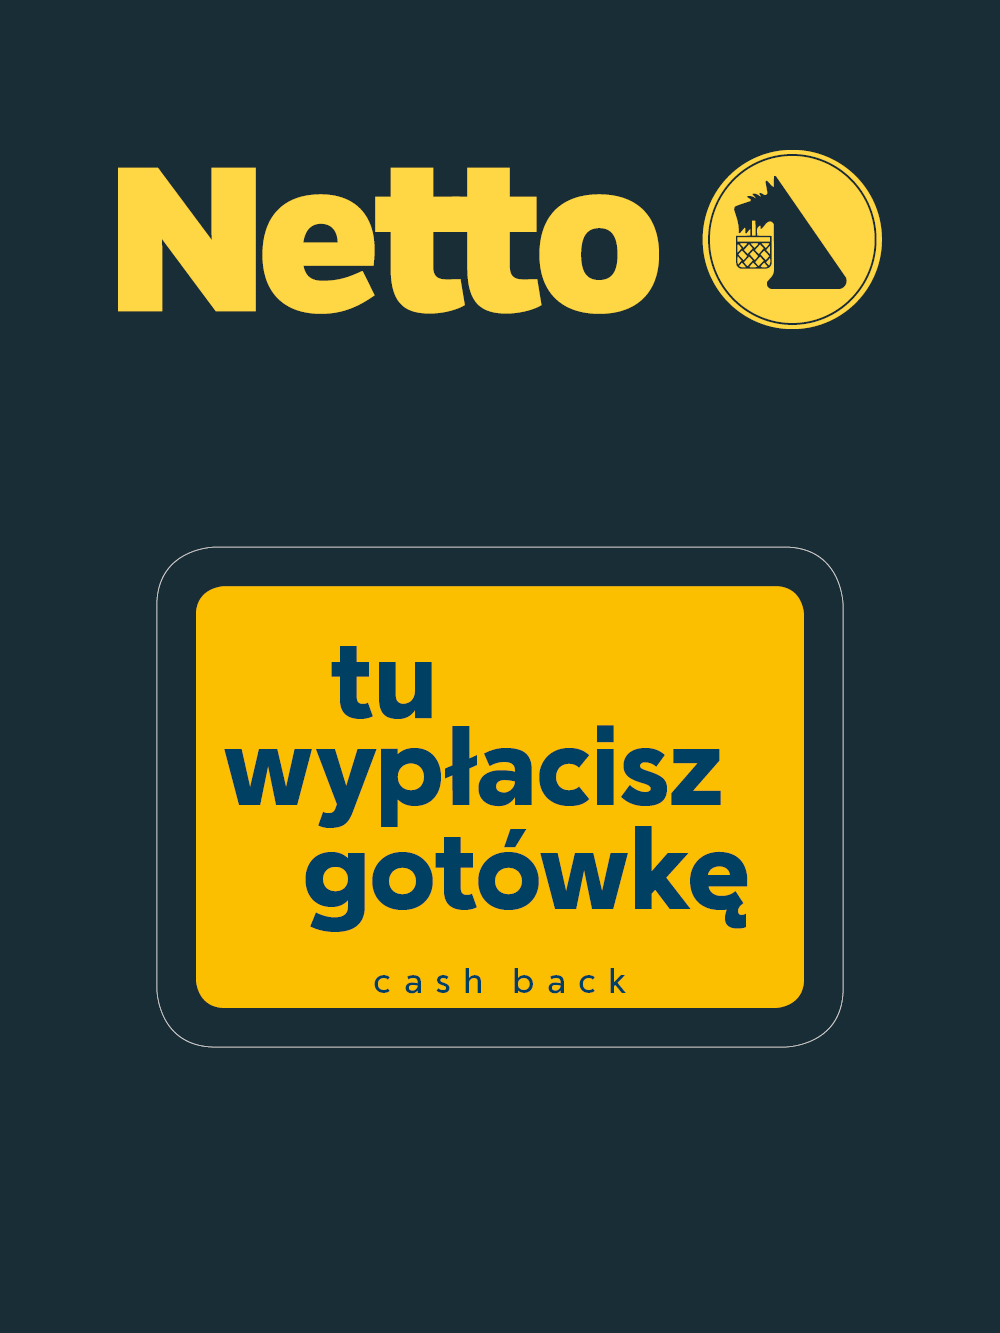 Nowe metody płatności w Netto